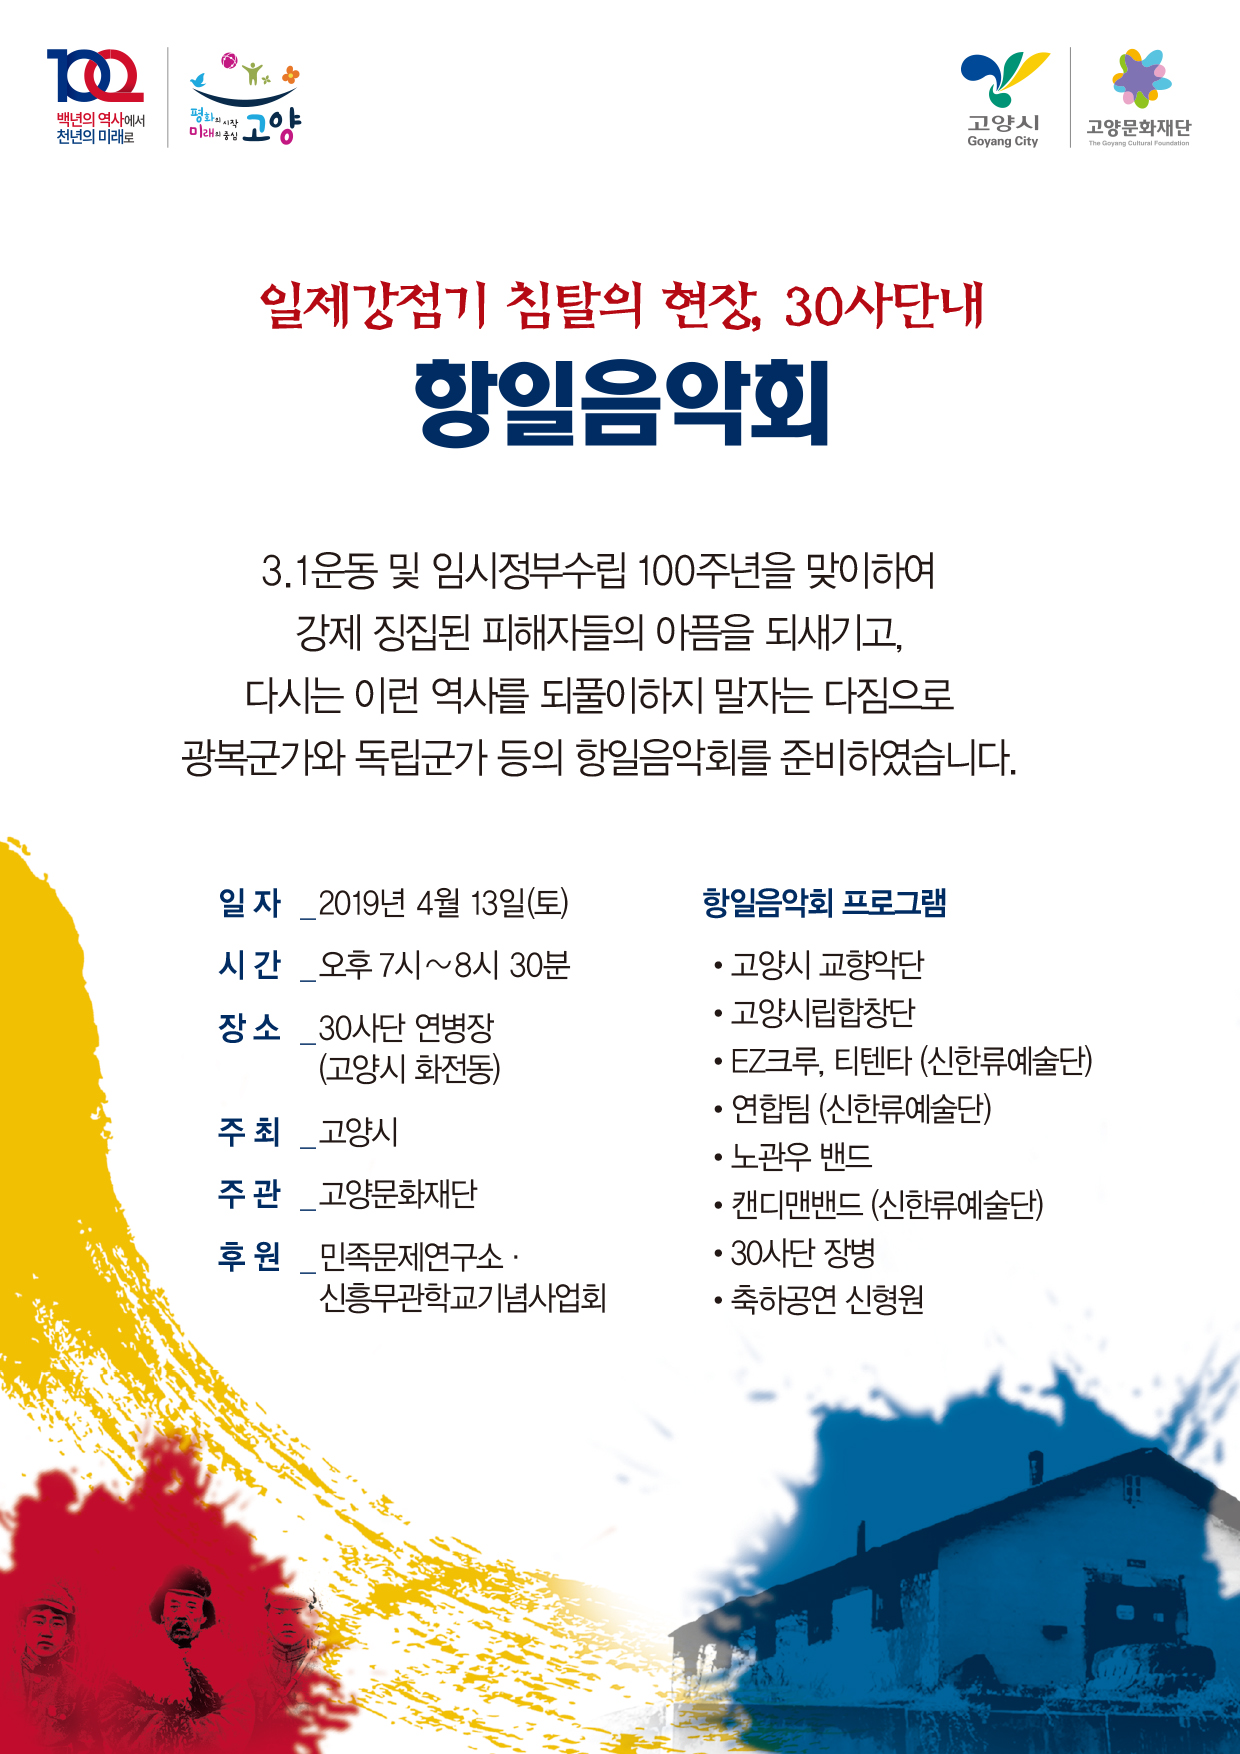 3.1 운동 및 대한민국 임시정부 수립 100주년 기념 